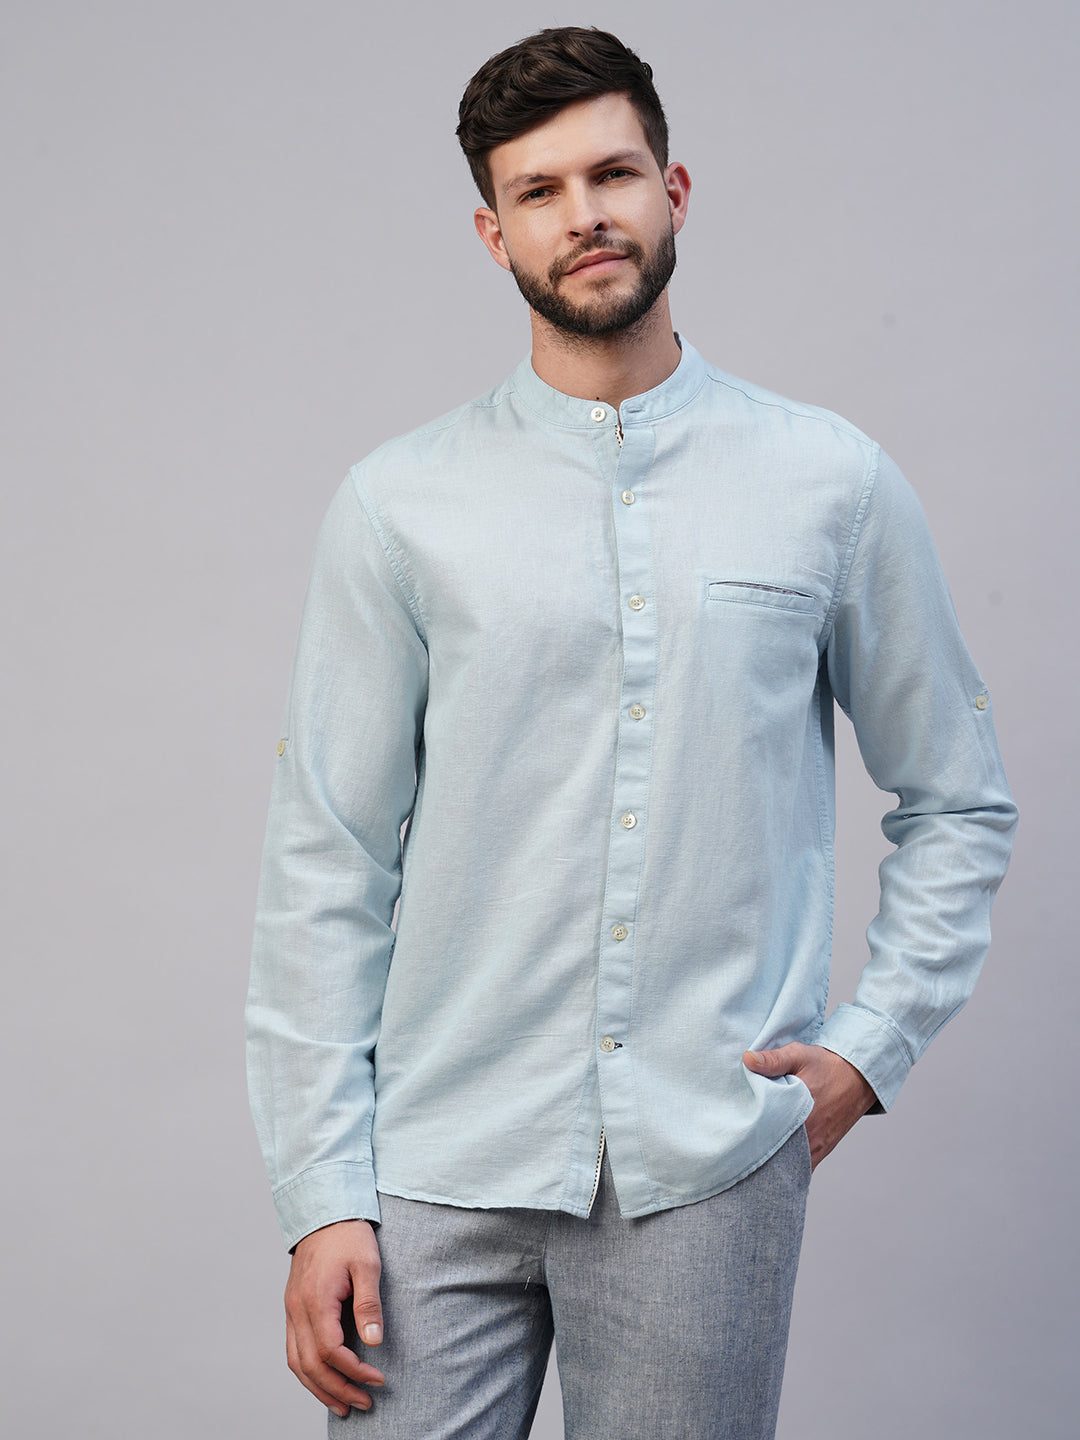 Men's Sky Linen Cotton Regular Fit shirt